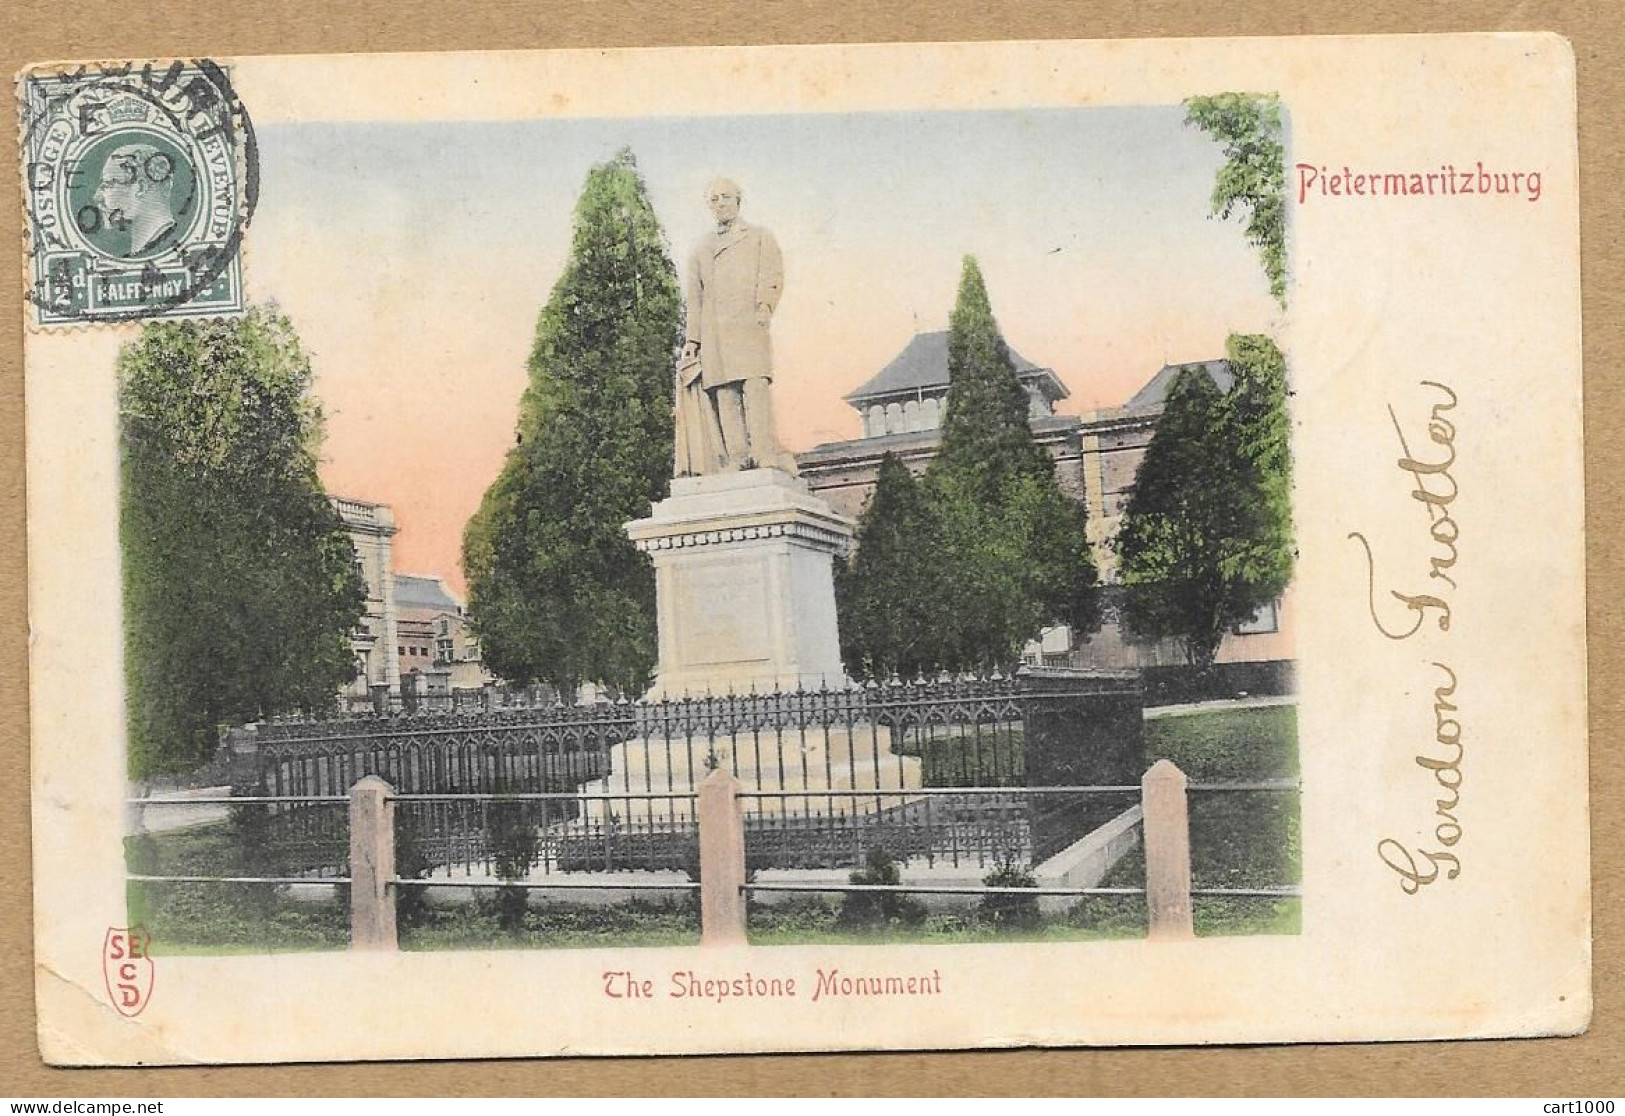 PIETERMARITZBURG THE SHEPSTONE MONUMENT 1904 N°H202 - Afrique Du Sud